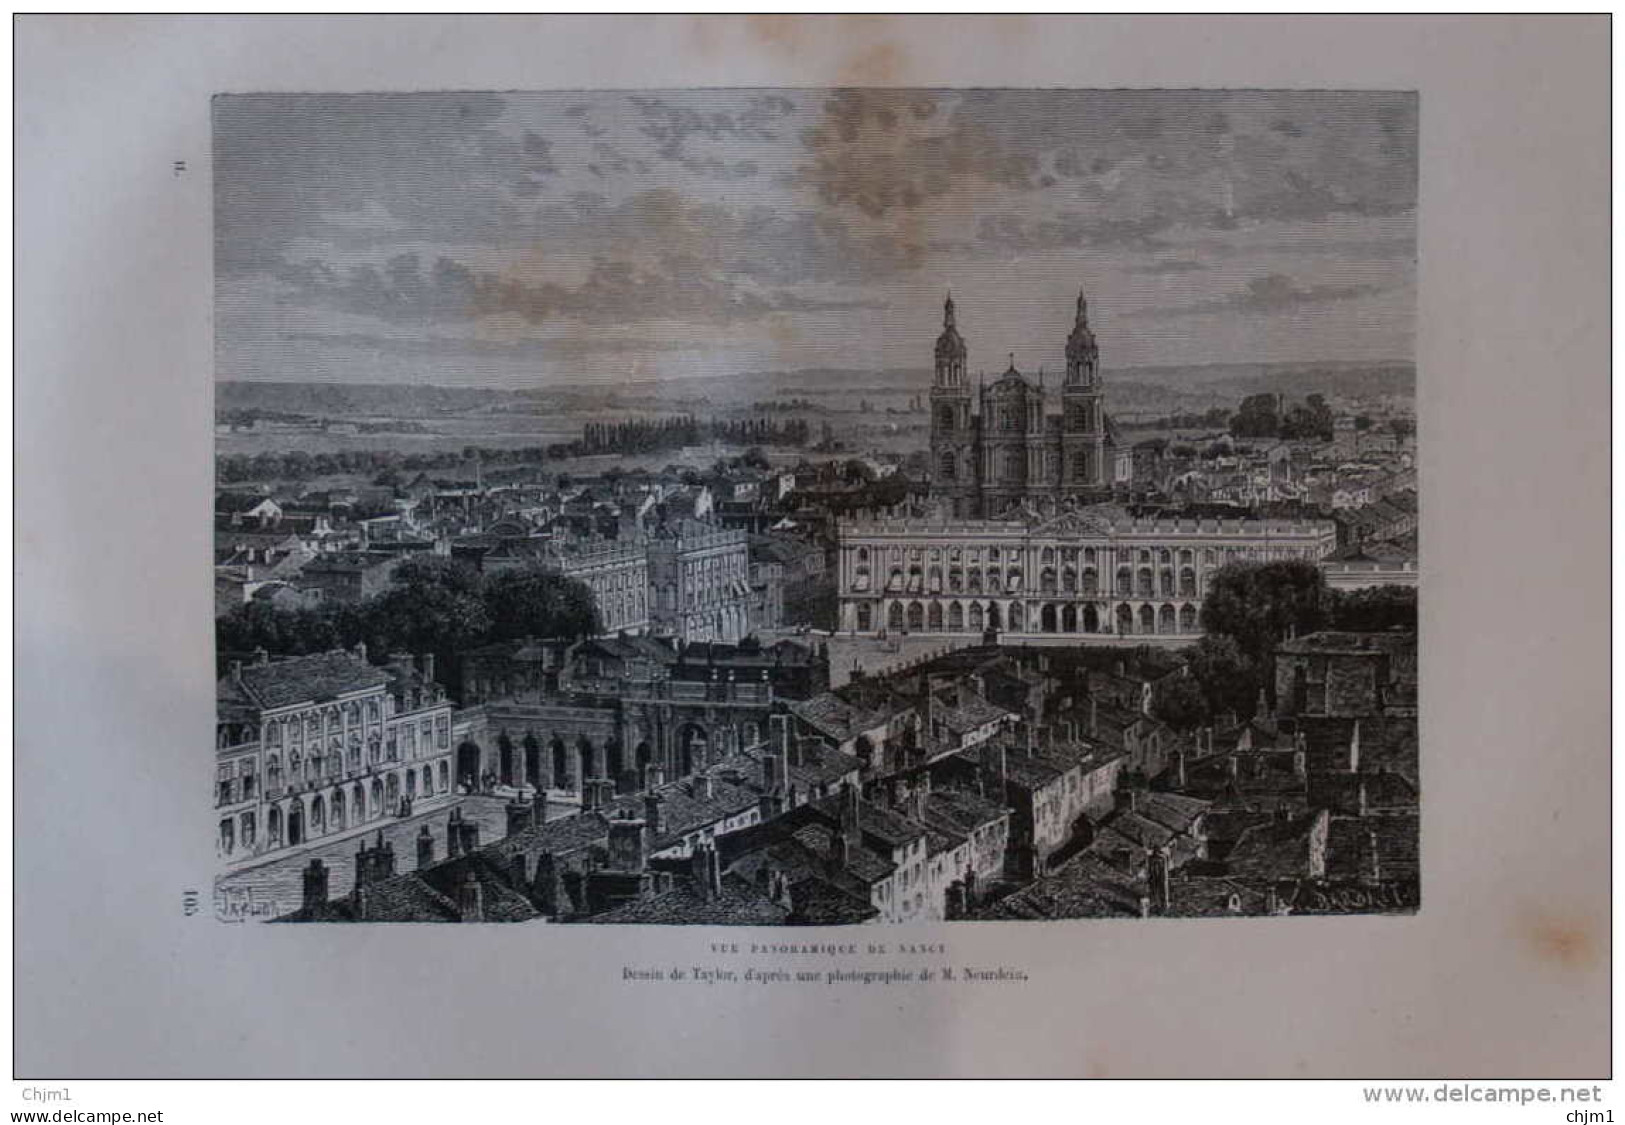 Vue Panoramique De Nancy - Dessin De Taylor - Page Original 1877 - Historical Documents